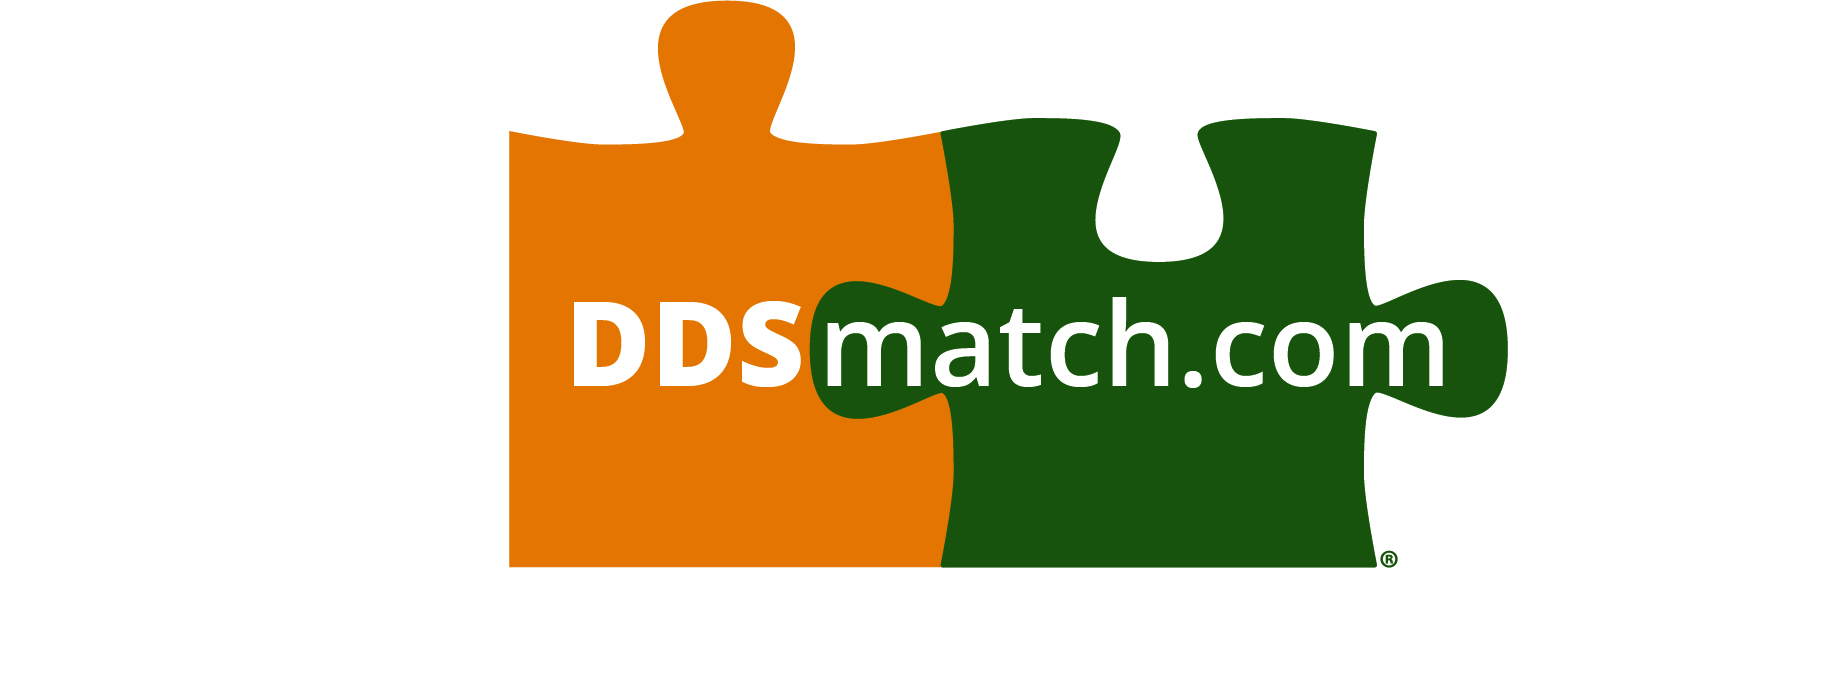 ddsmatch.com - Michele Gabriel Logo